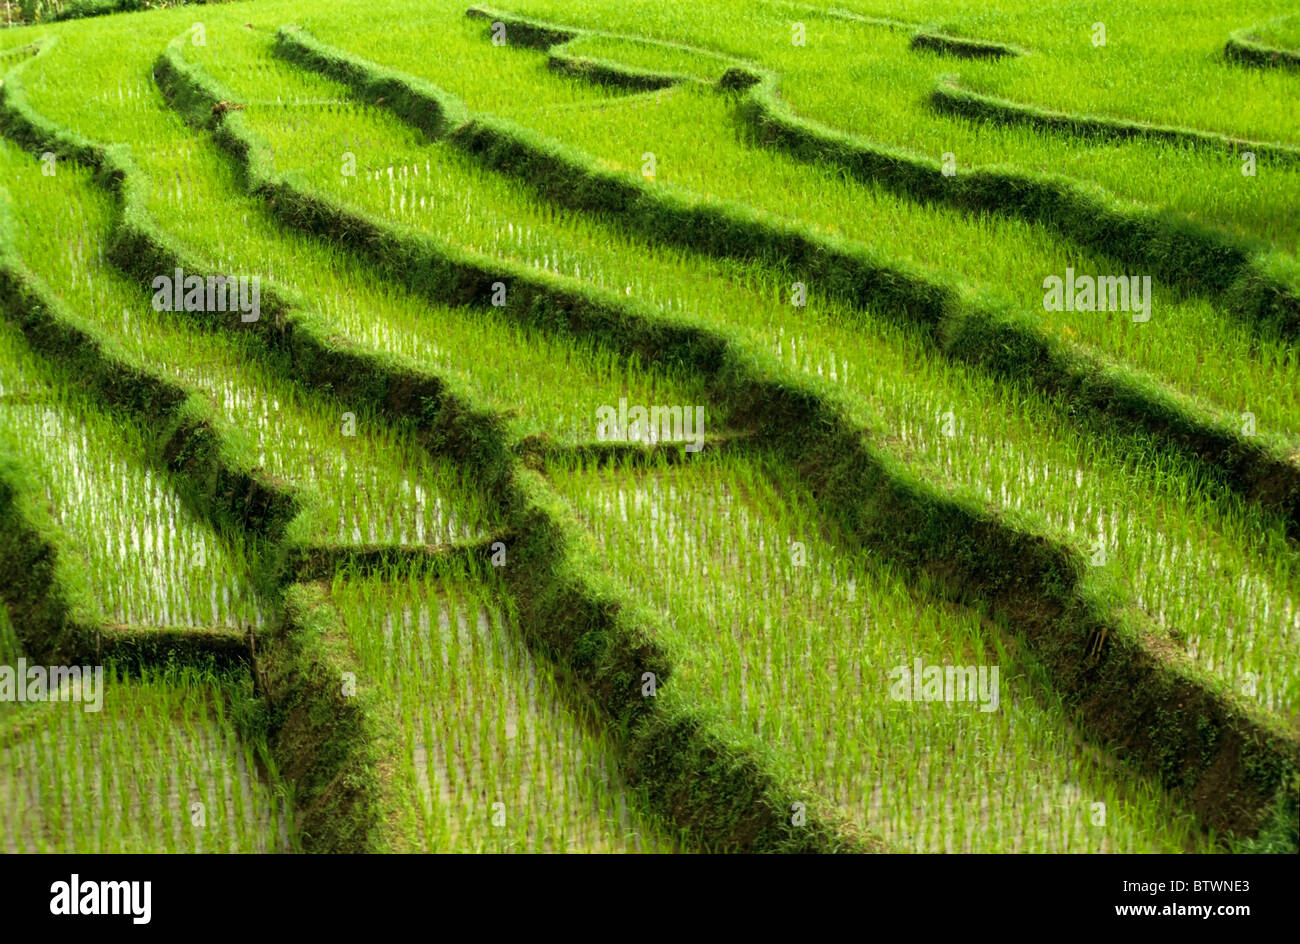 Le nord de la Thaïlande, les rizières en terrasses Banque D'Images